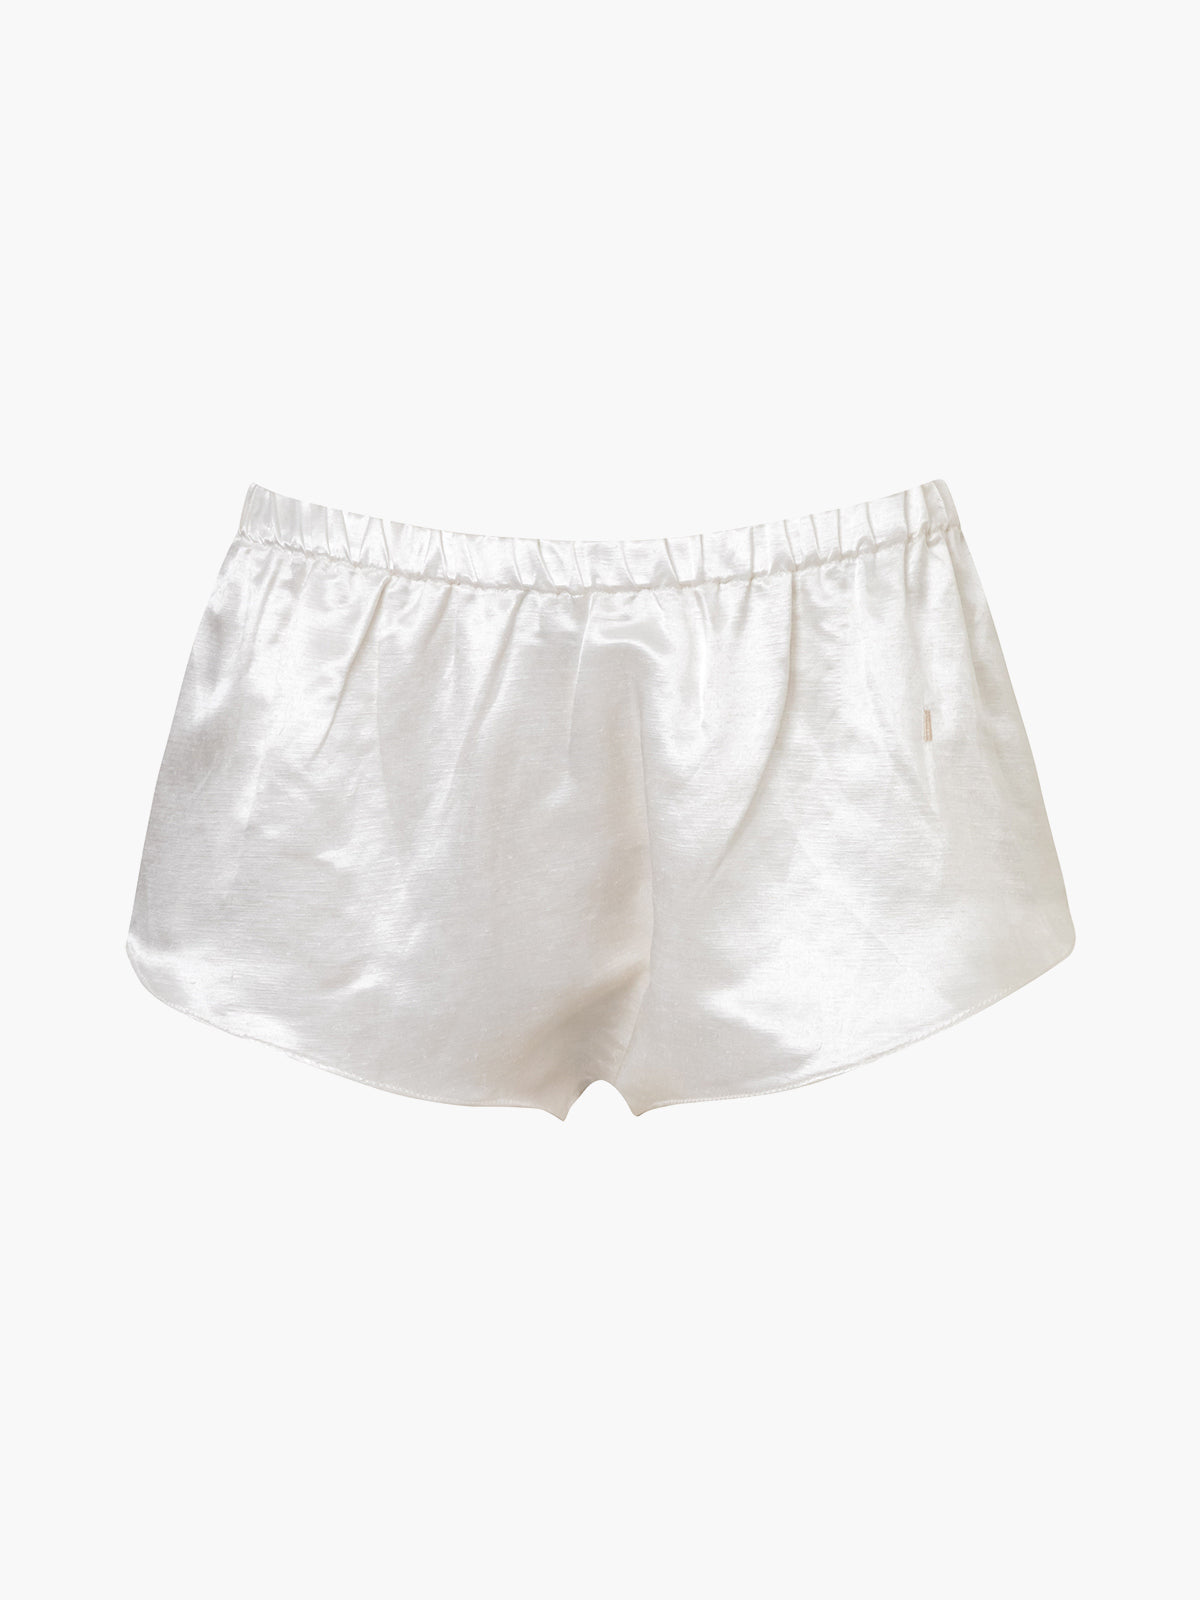 Cometa Bomber Silk Shorts | White Cometa Bomber Silk Shorts | White